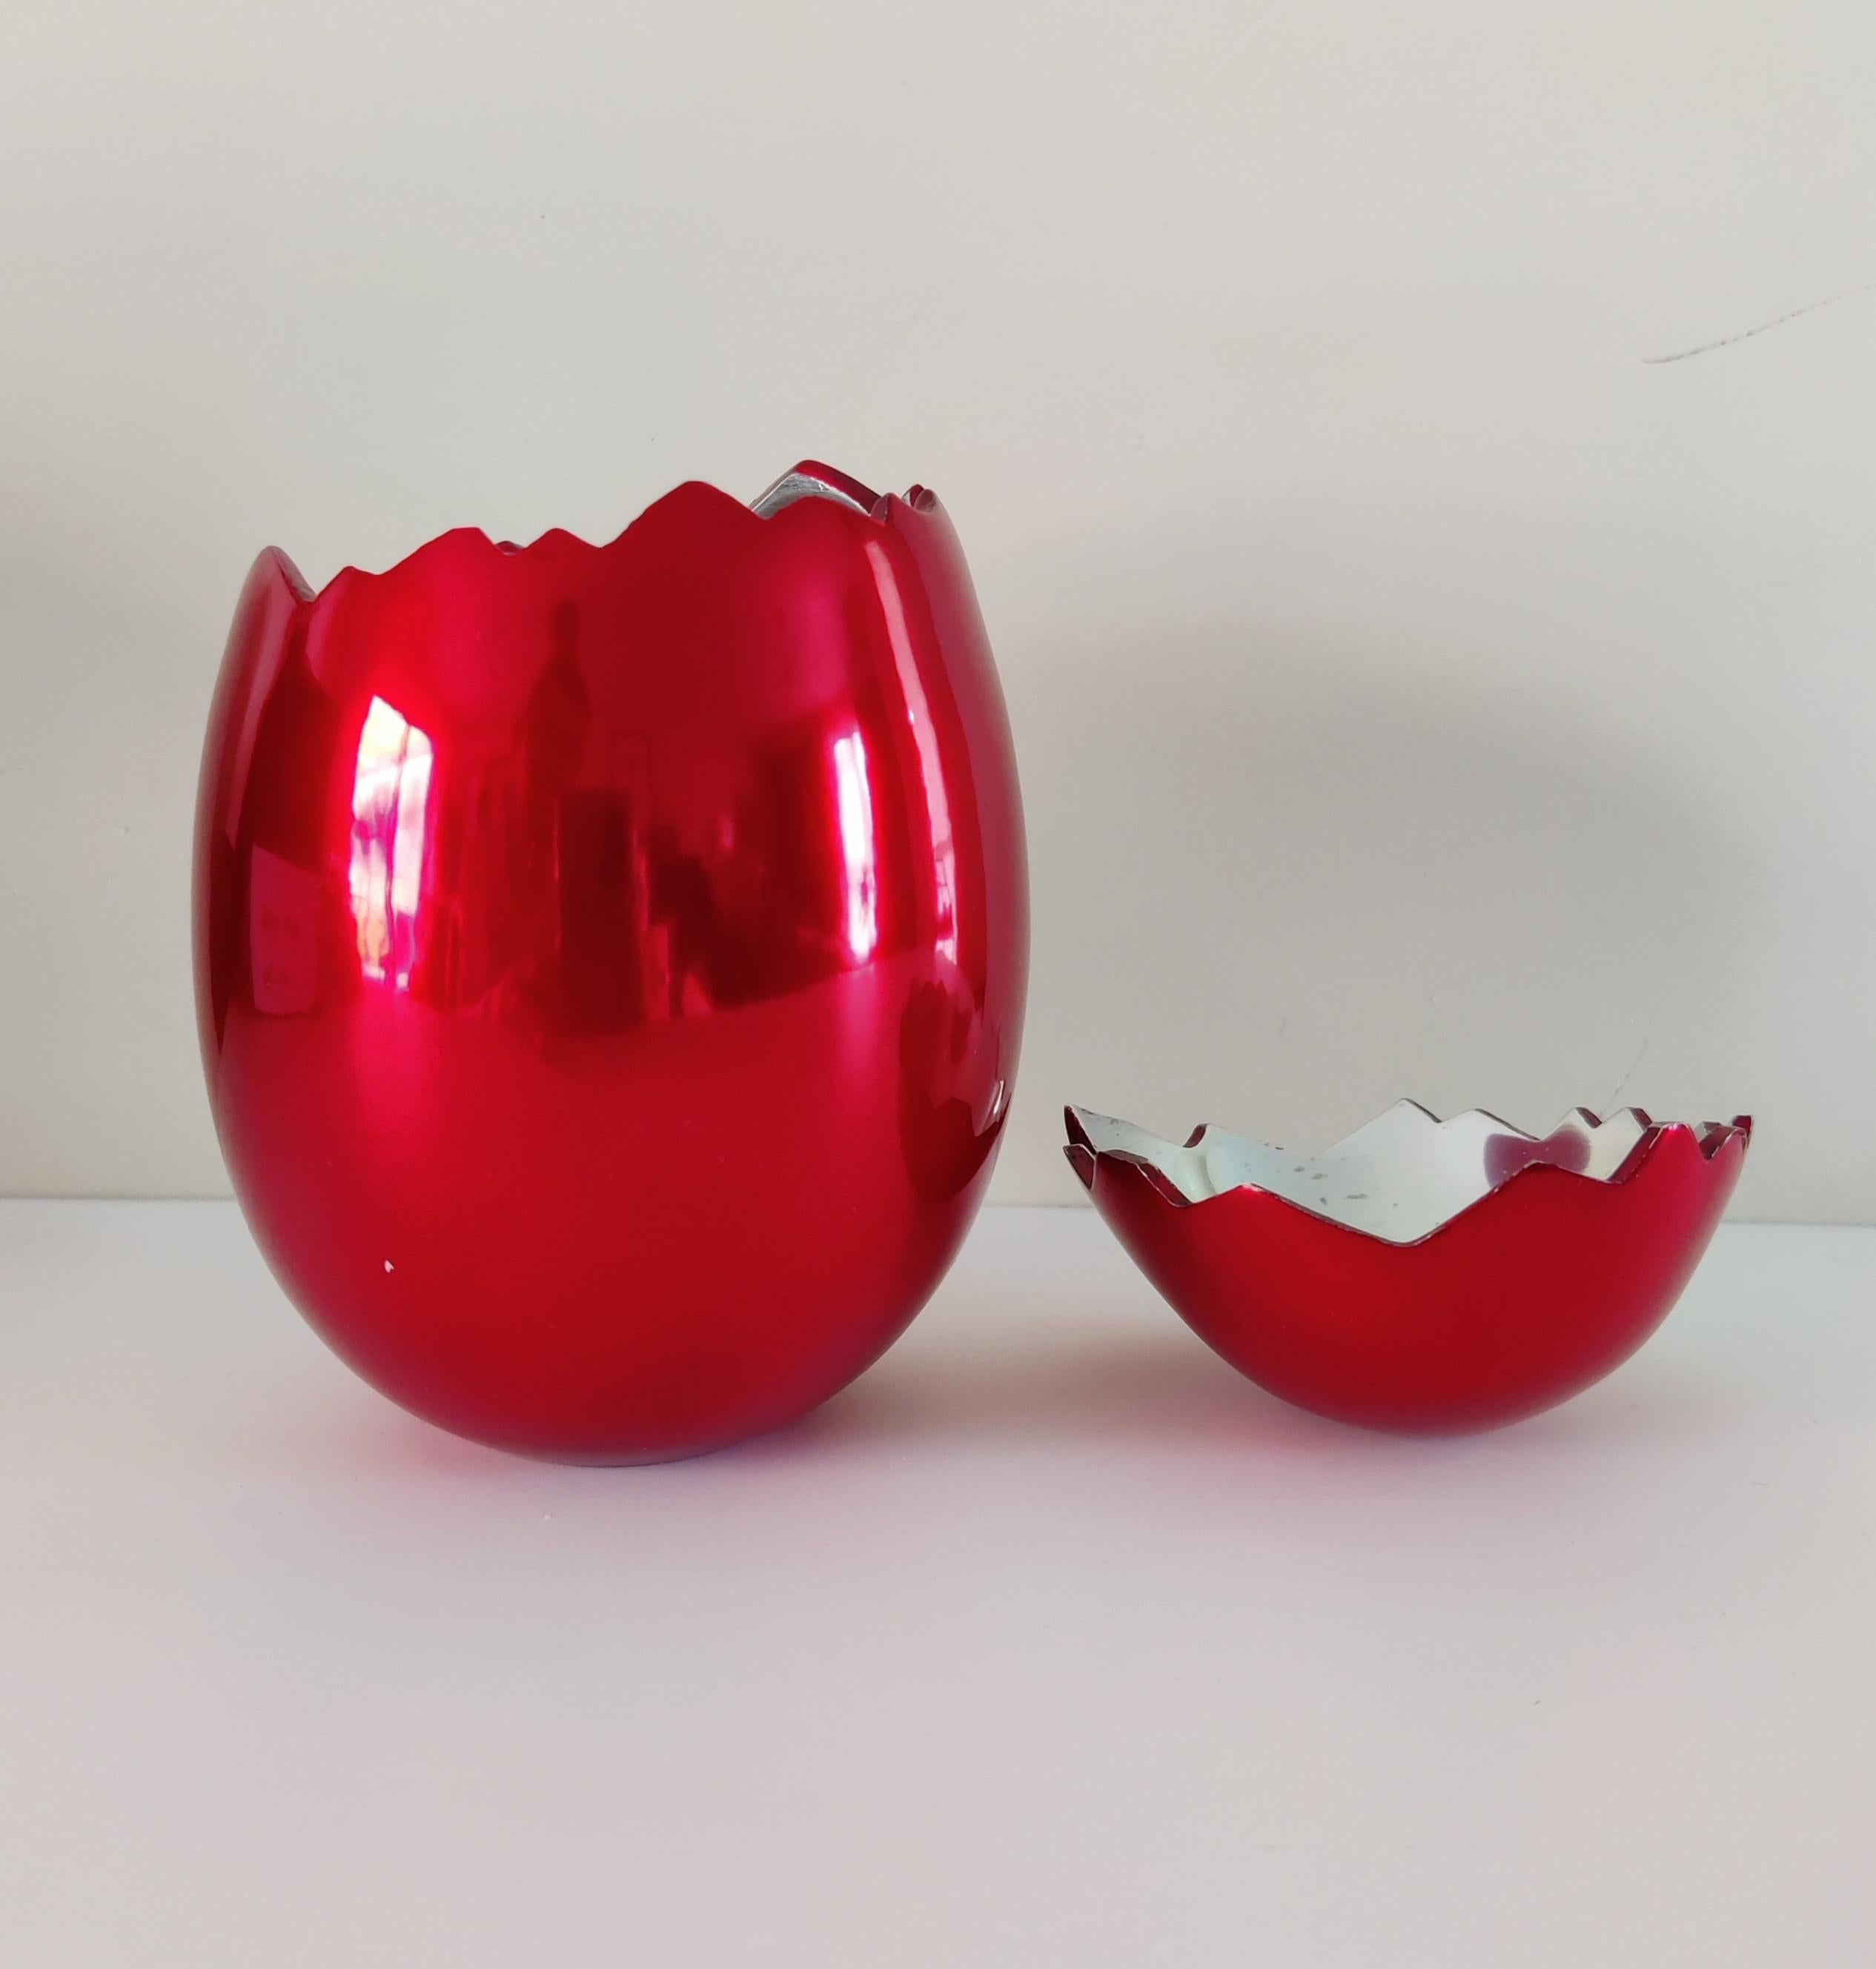 Jeff Koons - Cracked Egg (rouge)

Aluminium multiple avec glaçure rouge, 2008
De l'édition de 1 000 exemplaires 
Publié par le Los Angeles County Museum of Art, Los Angeles, comme invitation pour l'ouverture du Broad Contemporary Art Museum, sans le